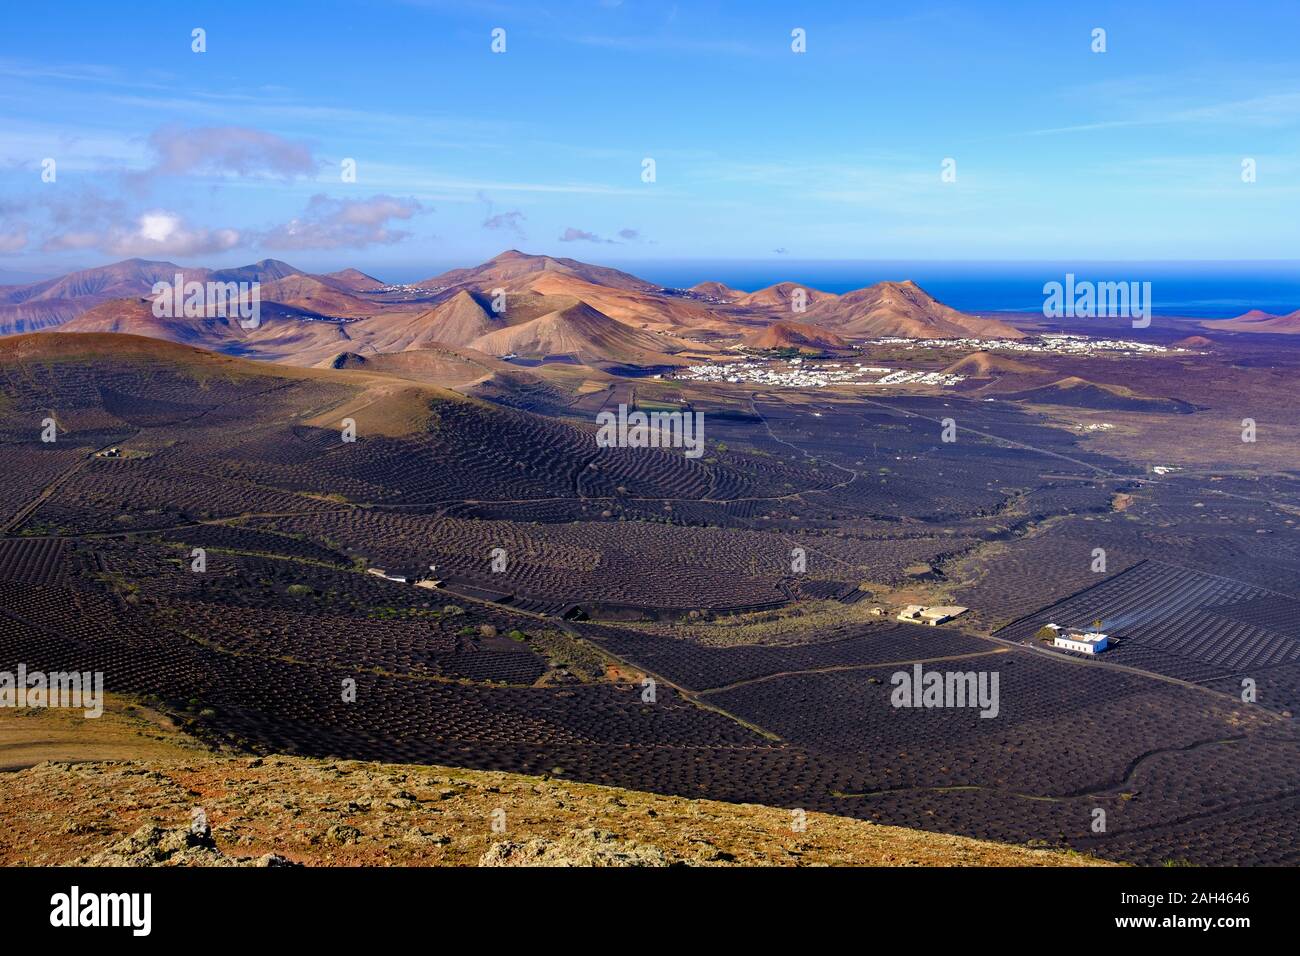 Spagna Isole Canarie Lanzarote La Geria regione, vigneti e colline Foto Stock